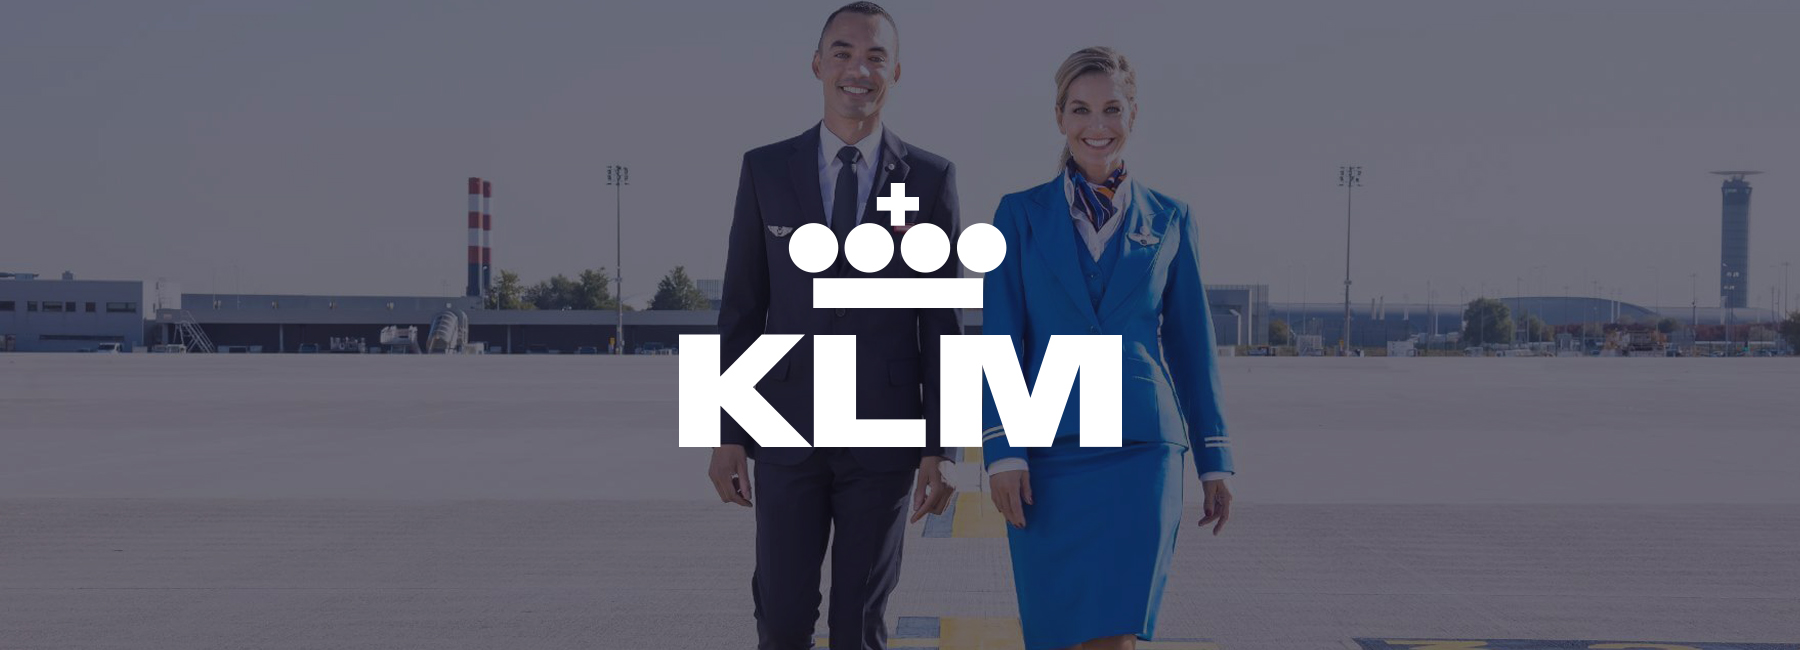 Mopinion verbessert internes Wissenssystem von Air France-KLM